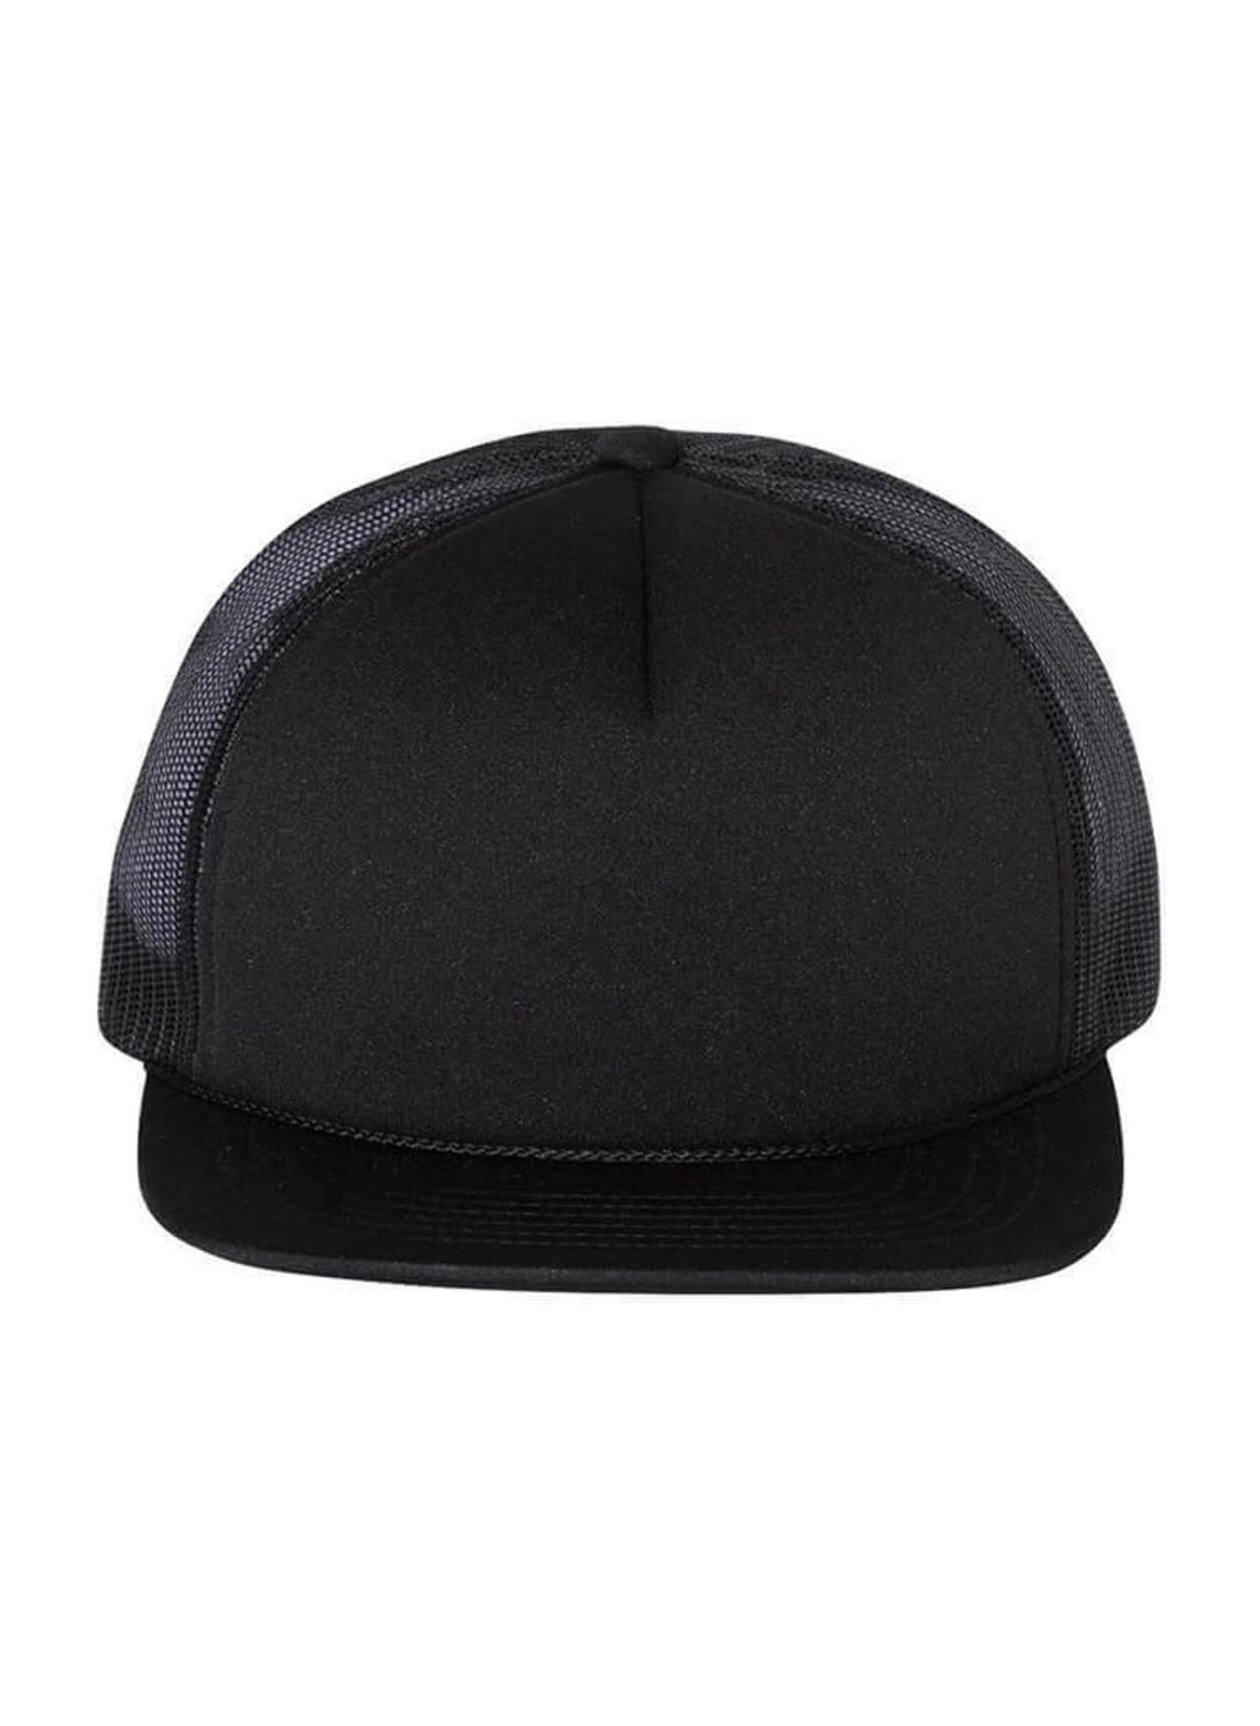 Richardson Black Foam Trucker Hat